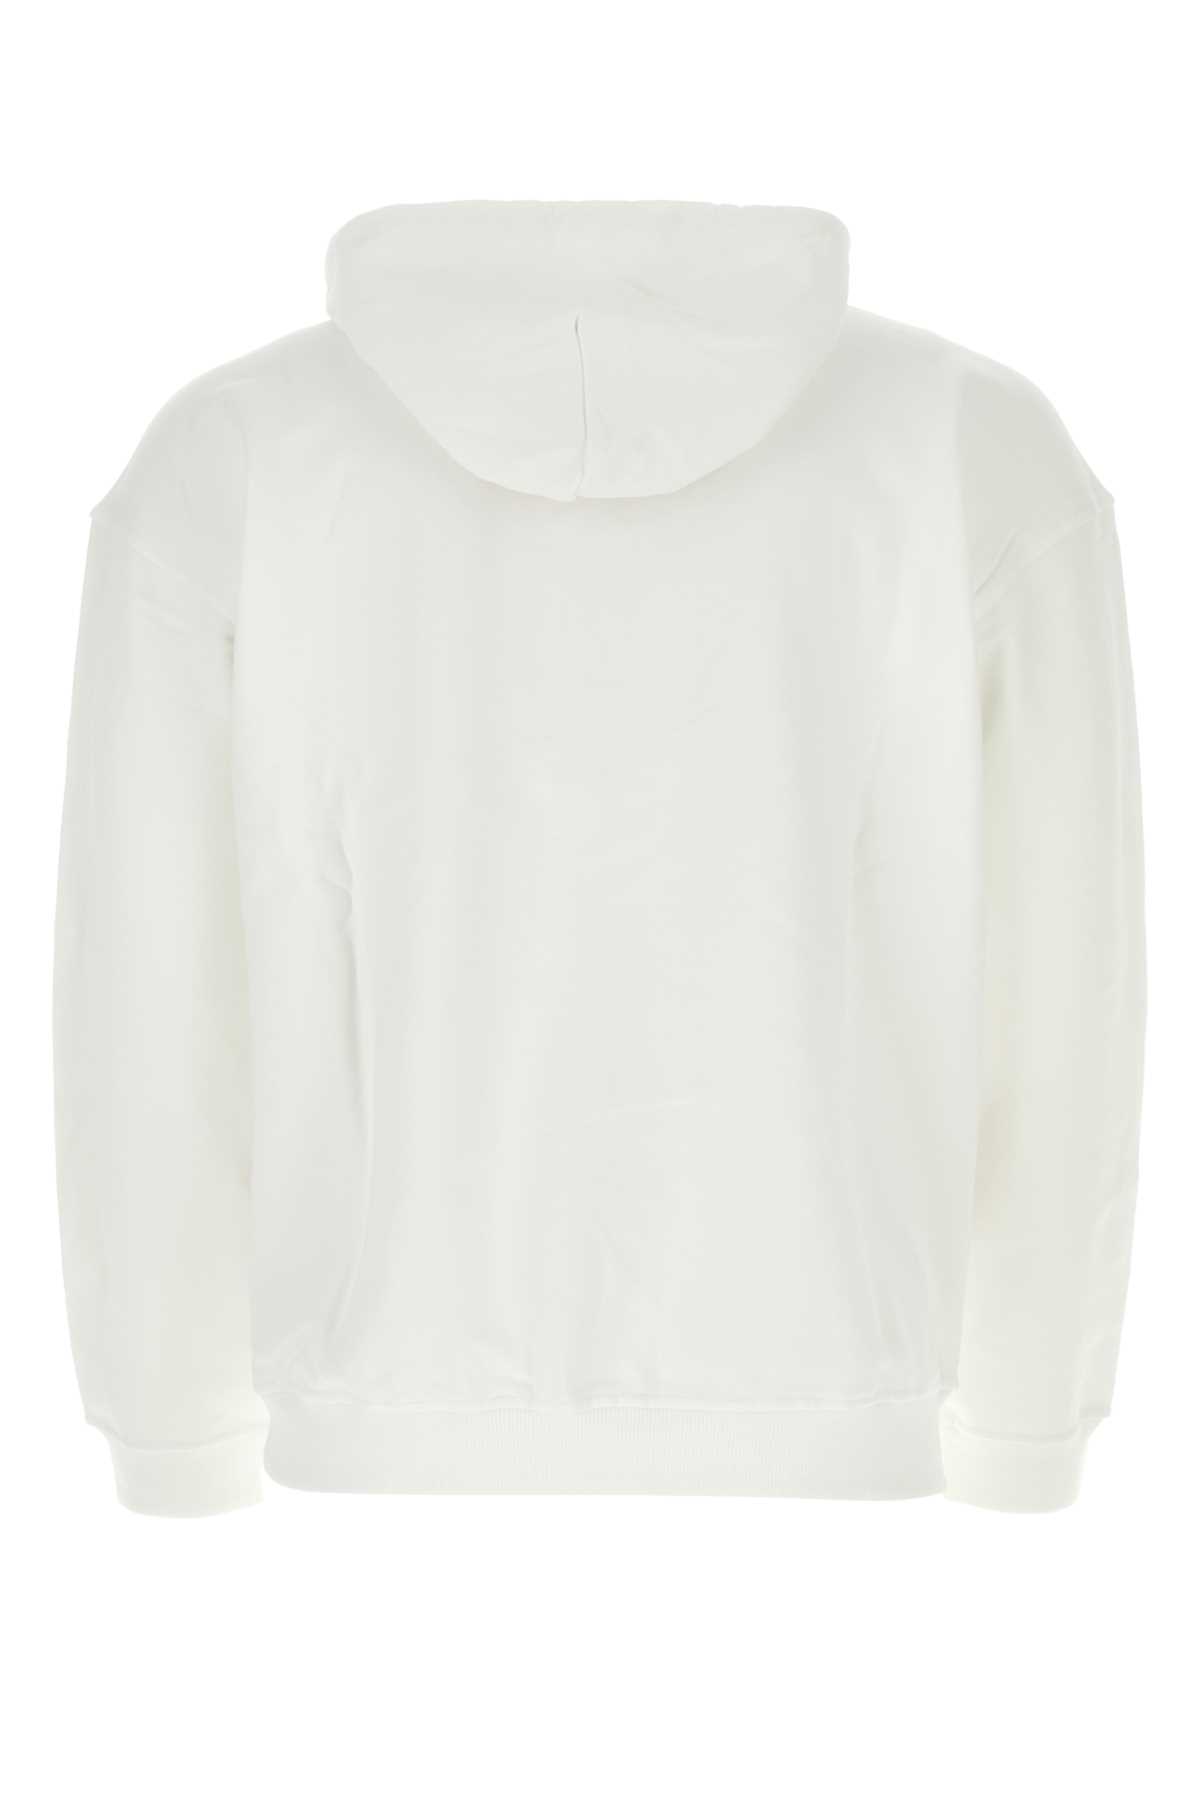 Diesel White Cotton Sweatshirt In 100